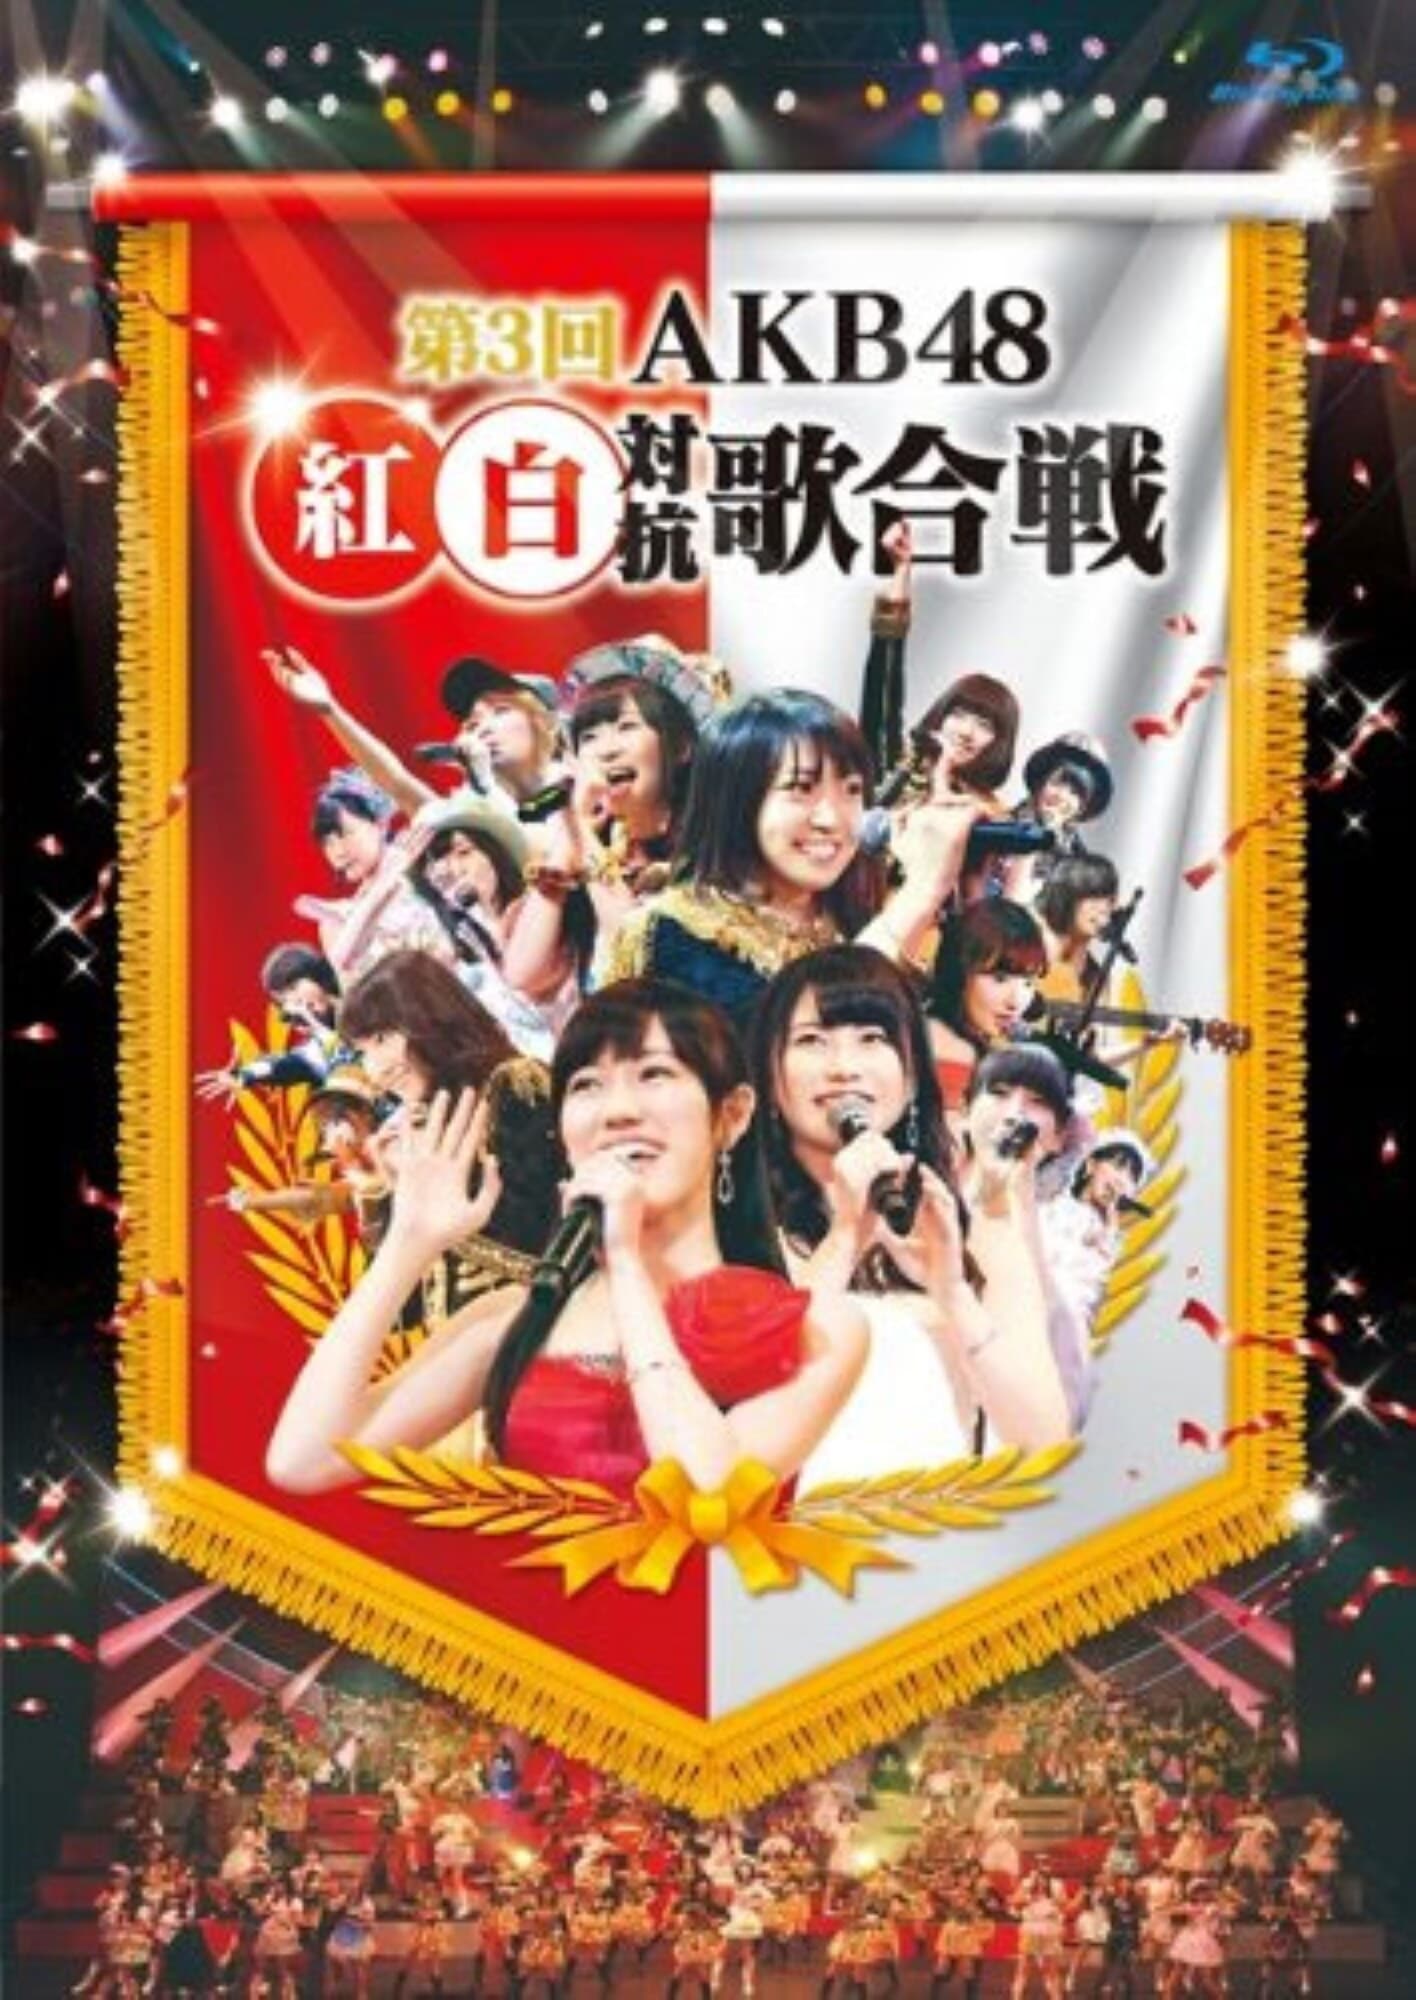 AKB48 Kouhaku Utagassen 2013